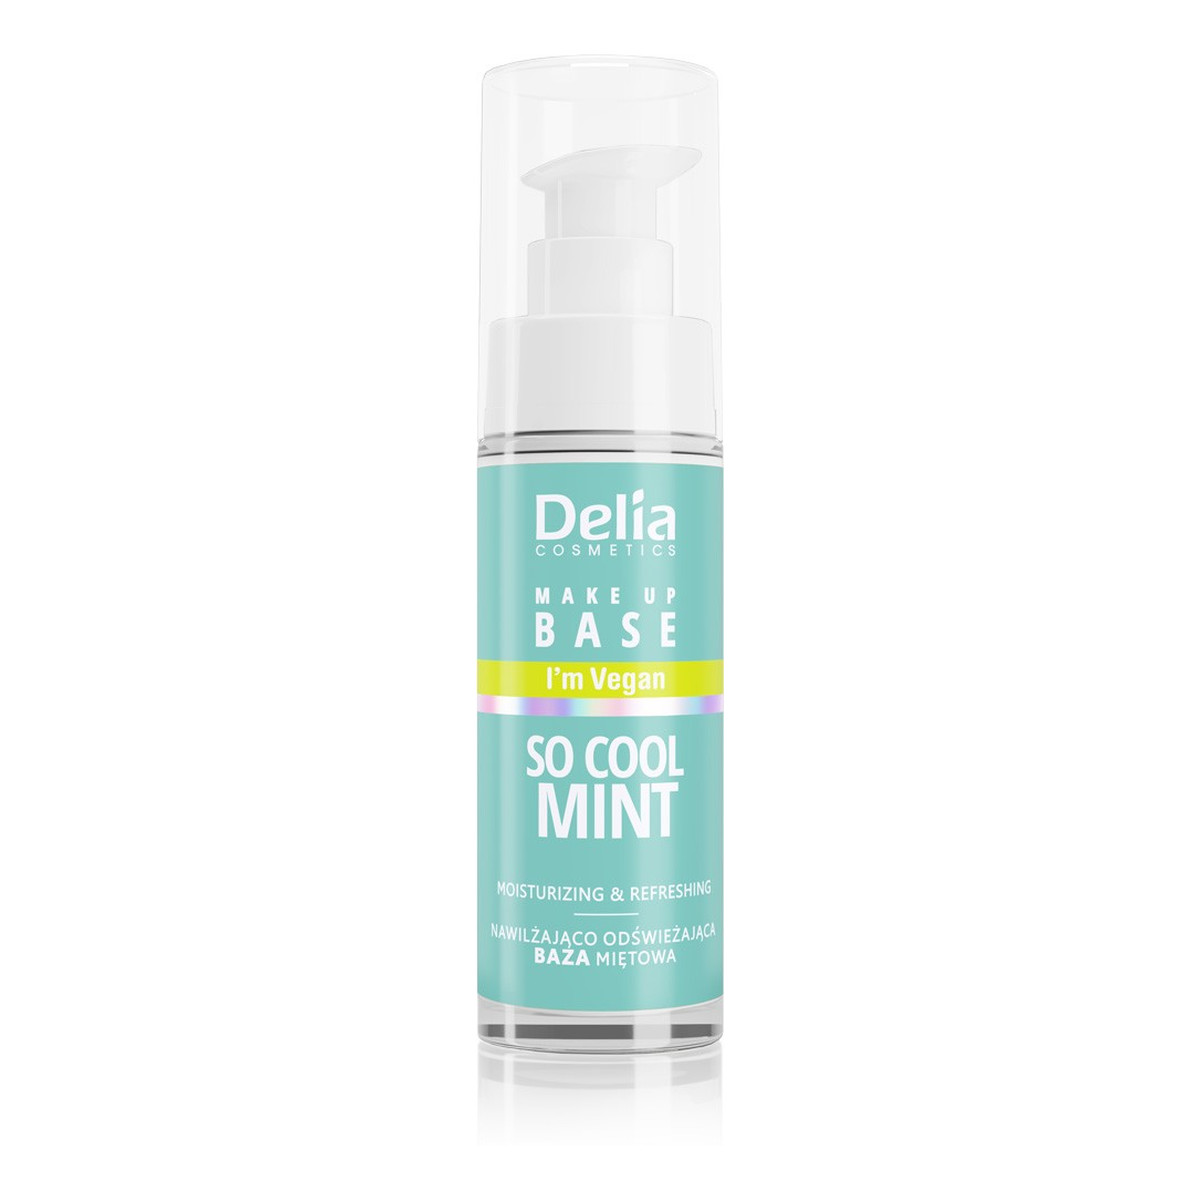 Delia Delia cosmetics wegańska nawilżająco-odświeżająca baza pod makijaż so cool mint (miętowa) 30ml